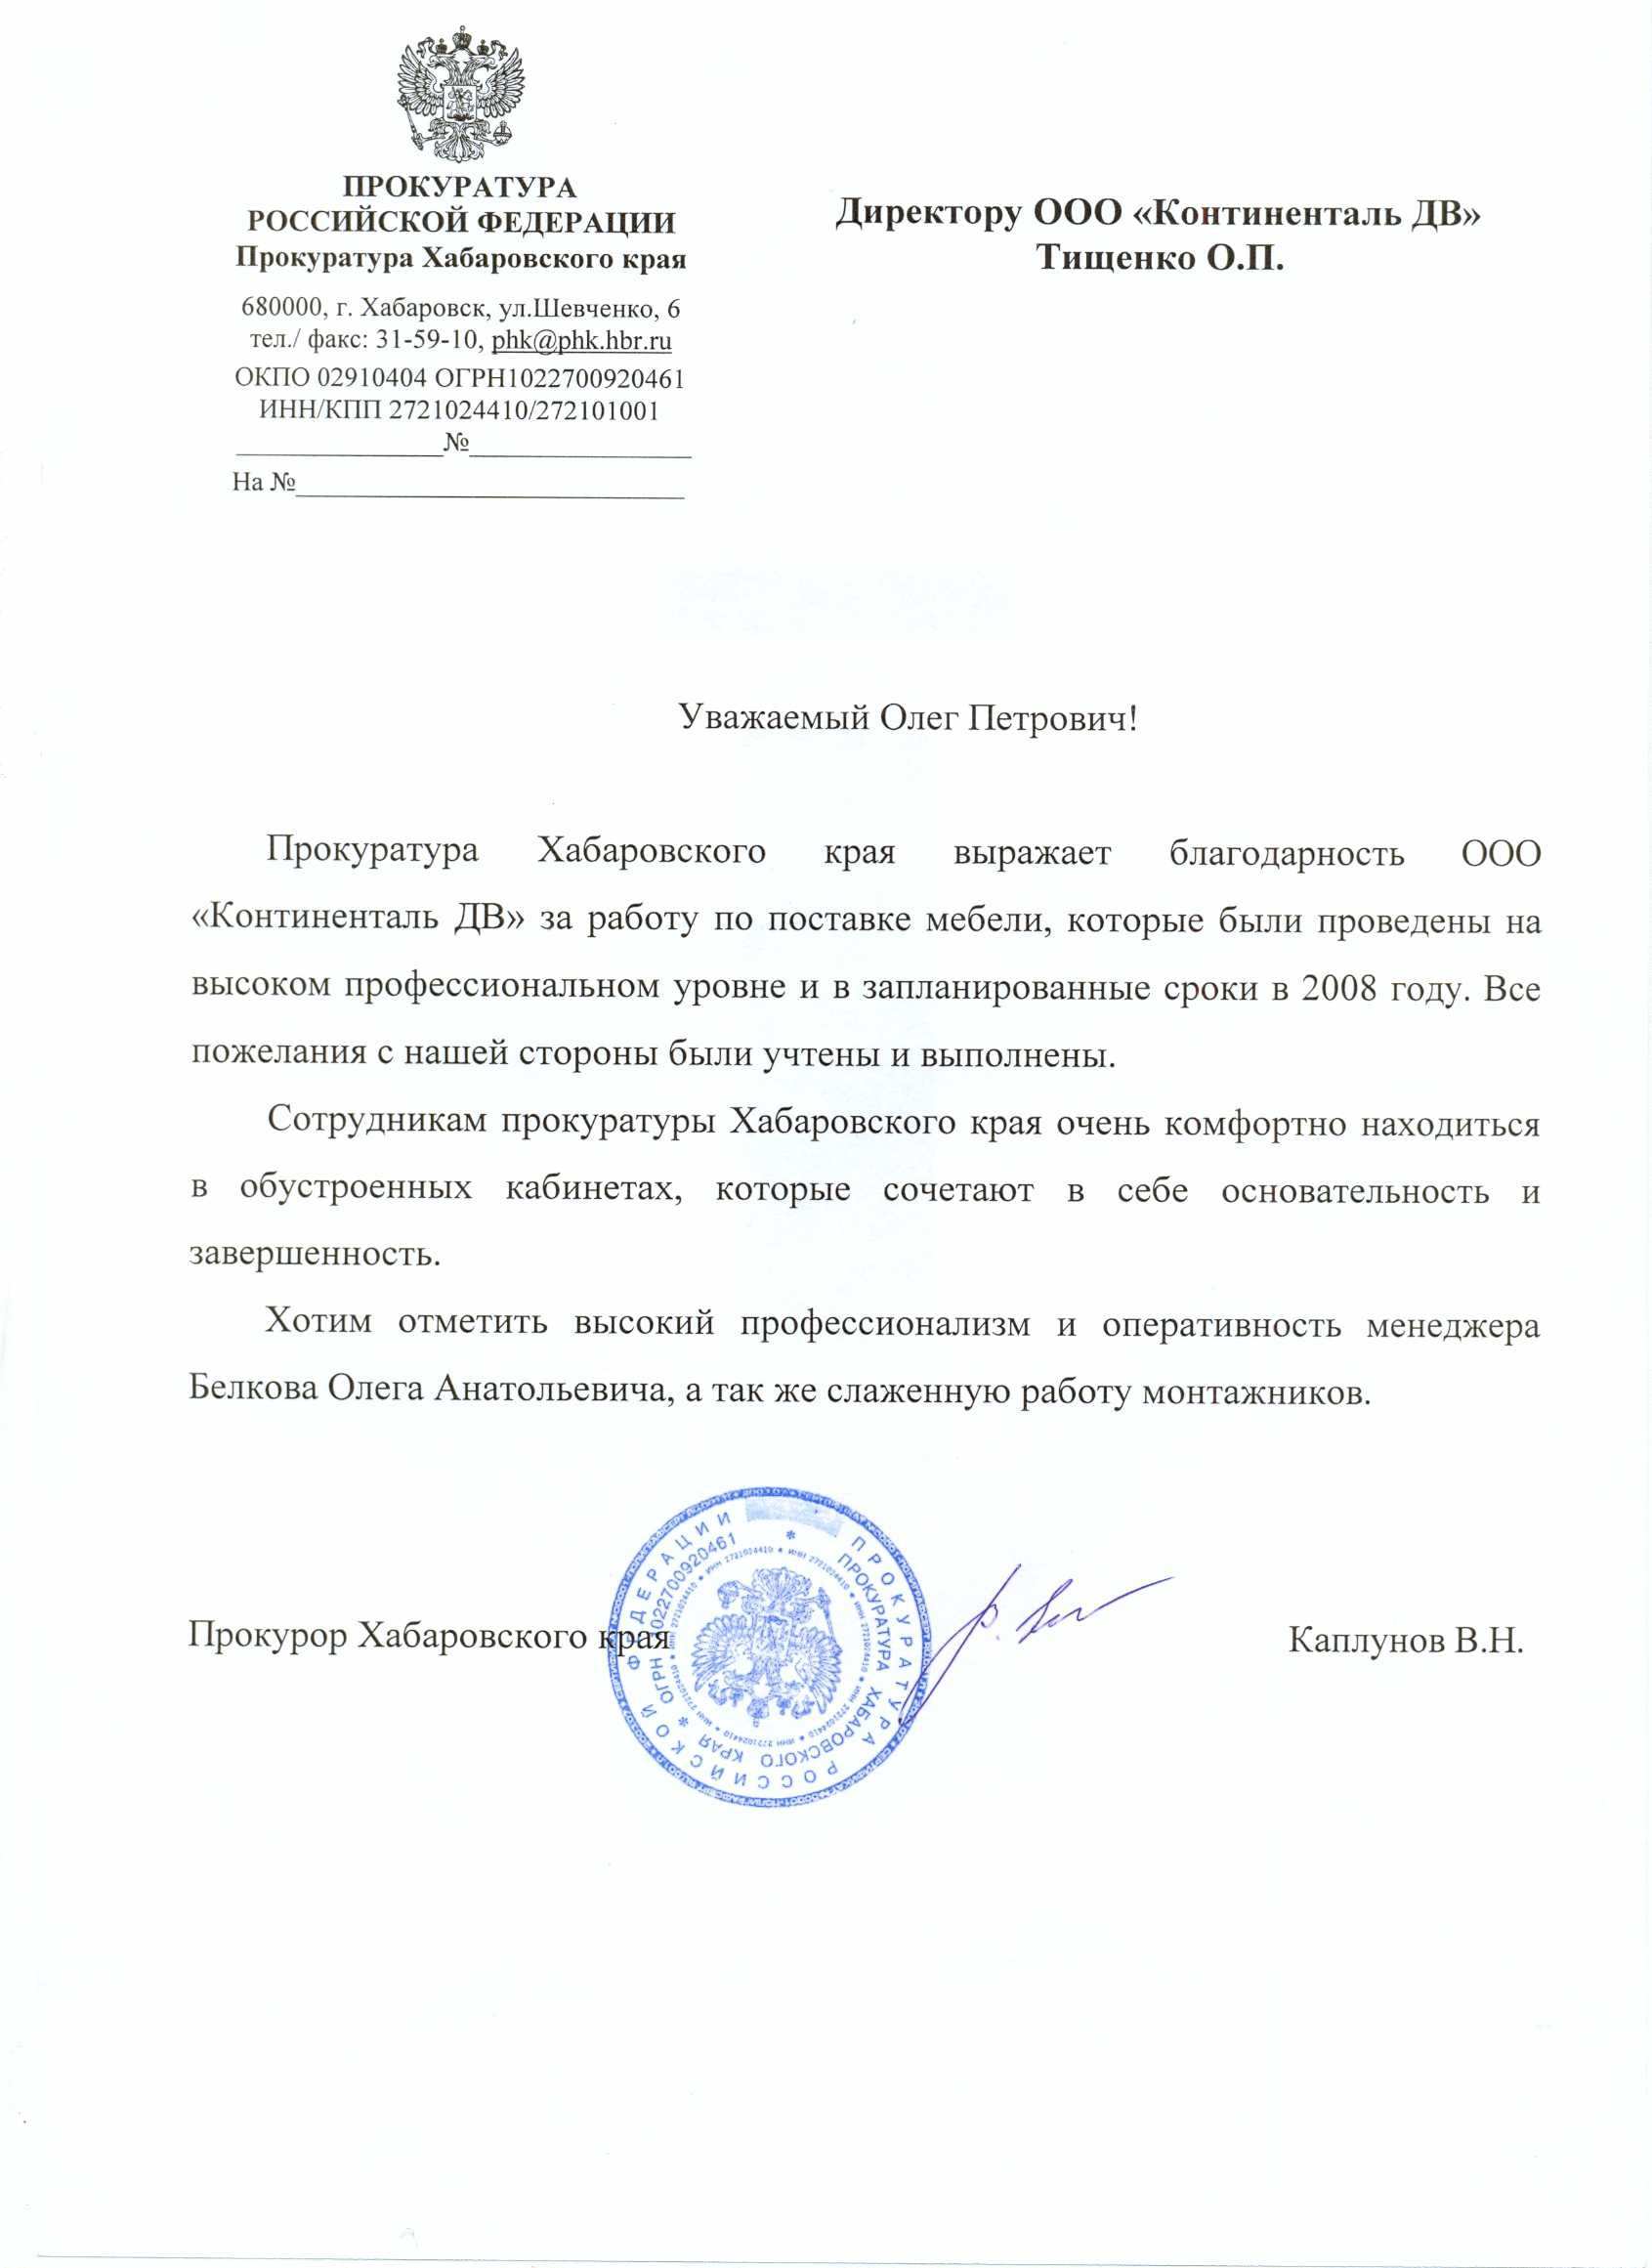 Прокуратура Хабаровского края выражает благодарность за работу по поставке мебели, которые были проведены на высоком профессиональном уровне и в запланированные сроки.